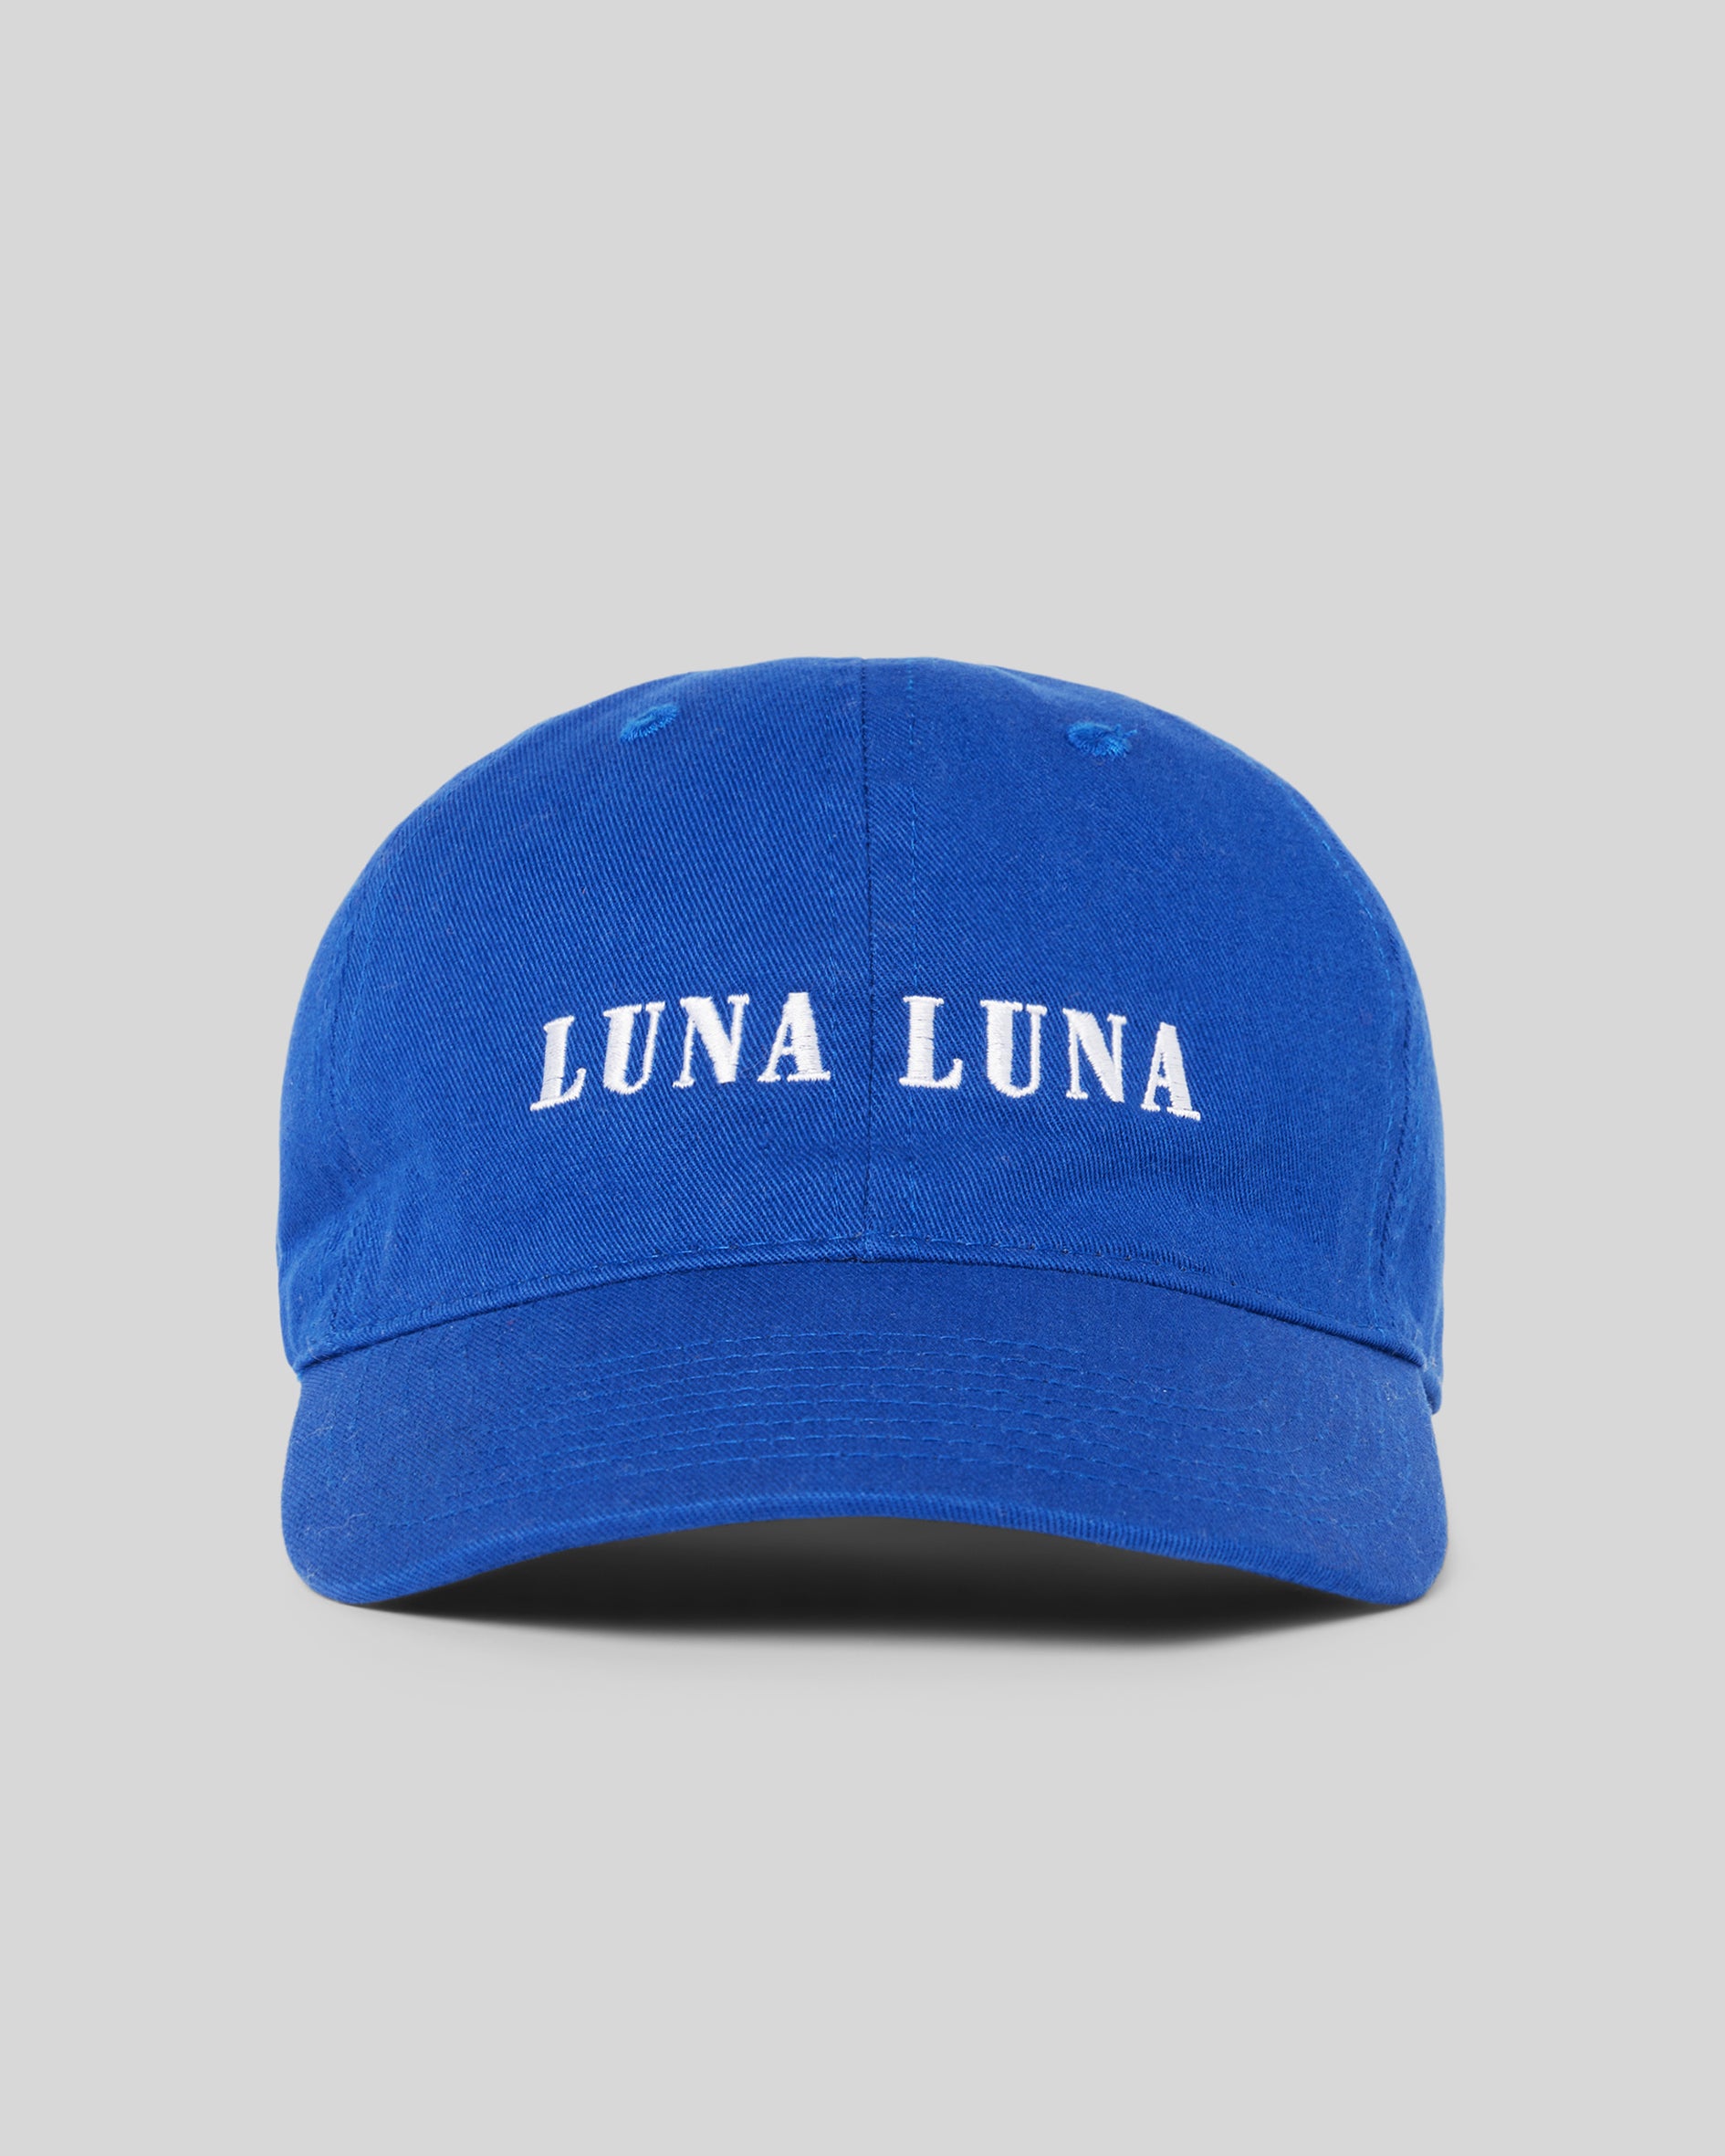 1987 Logo Hat, Cobalt Blue. Cobalt blue baseball hat with white Luna Luna embroidered text at front.